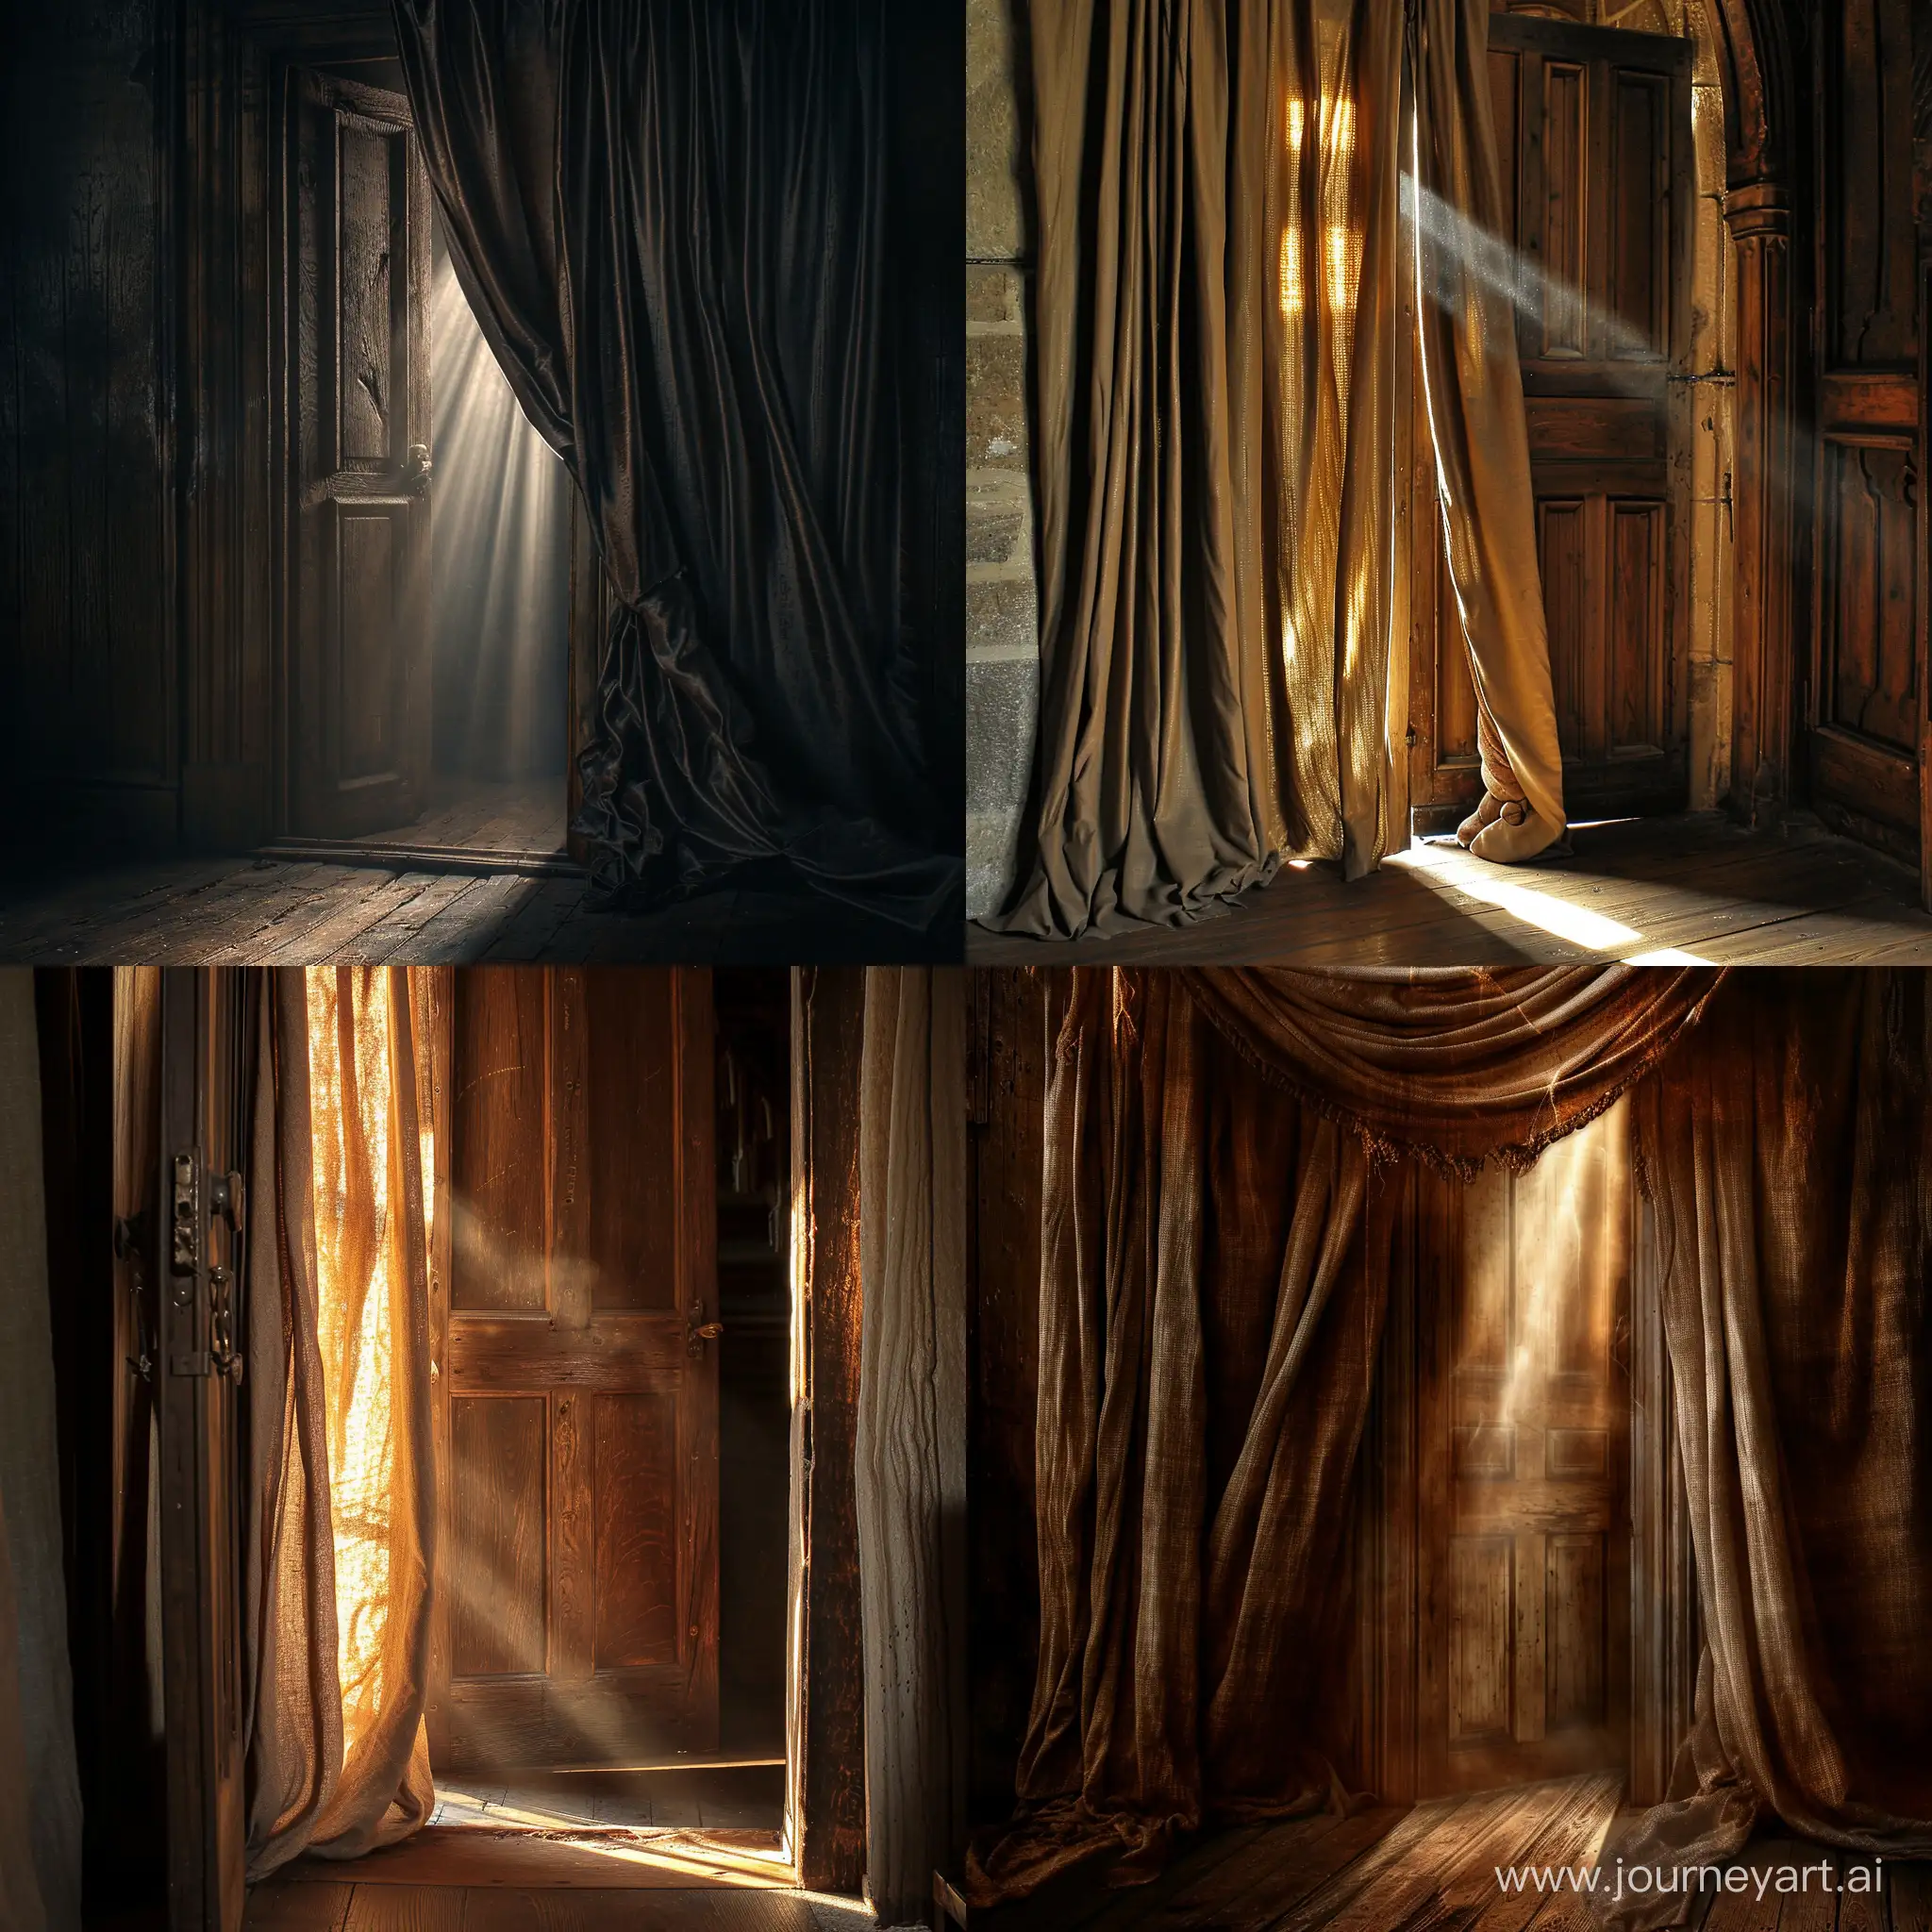 Sunlit-Oak-Door-with-Heavy-Curtains-Ajar